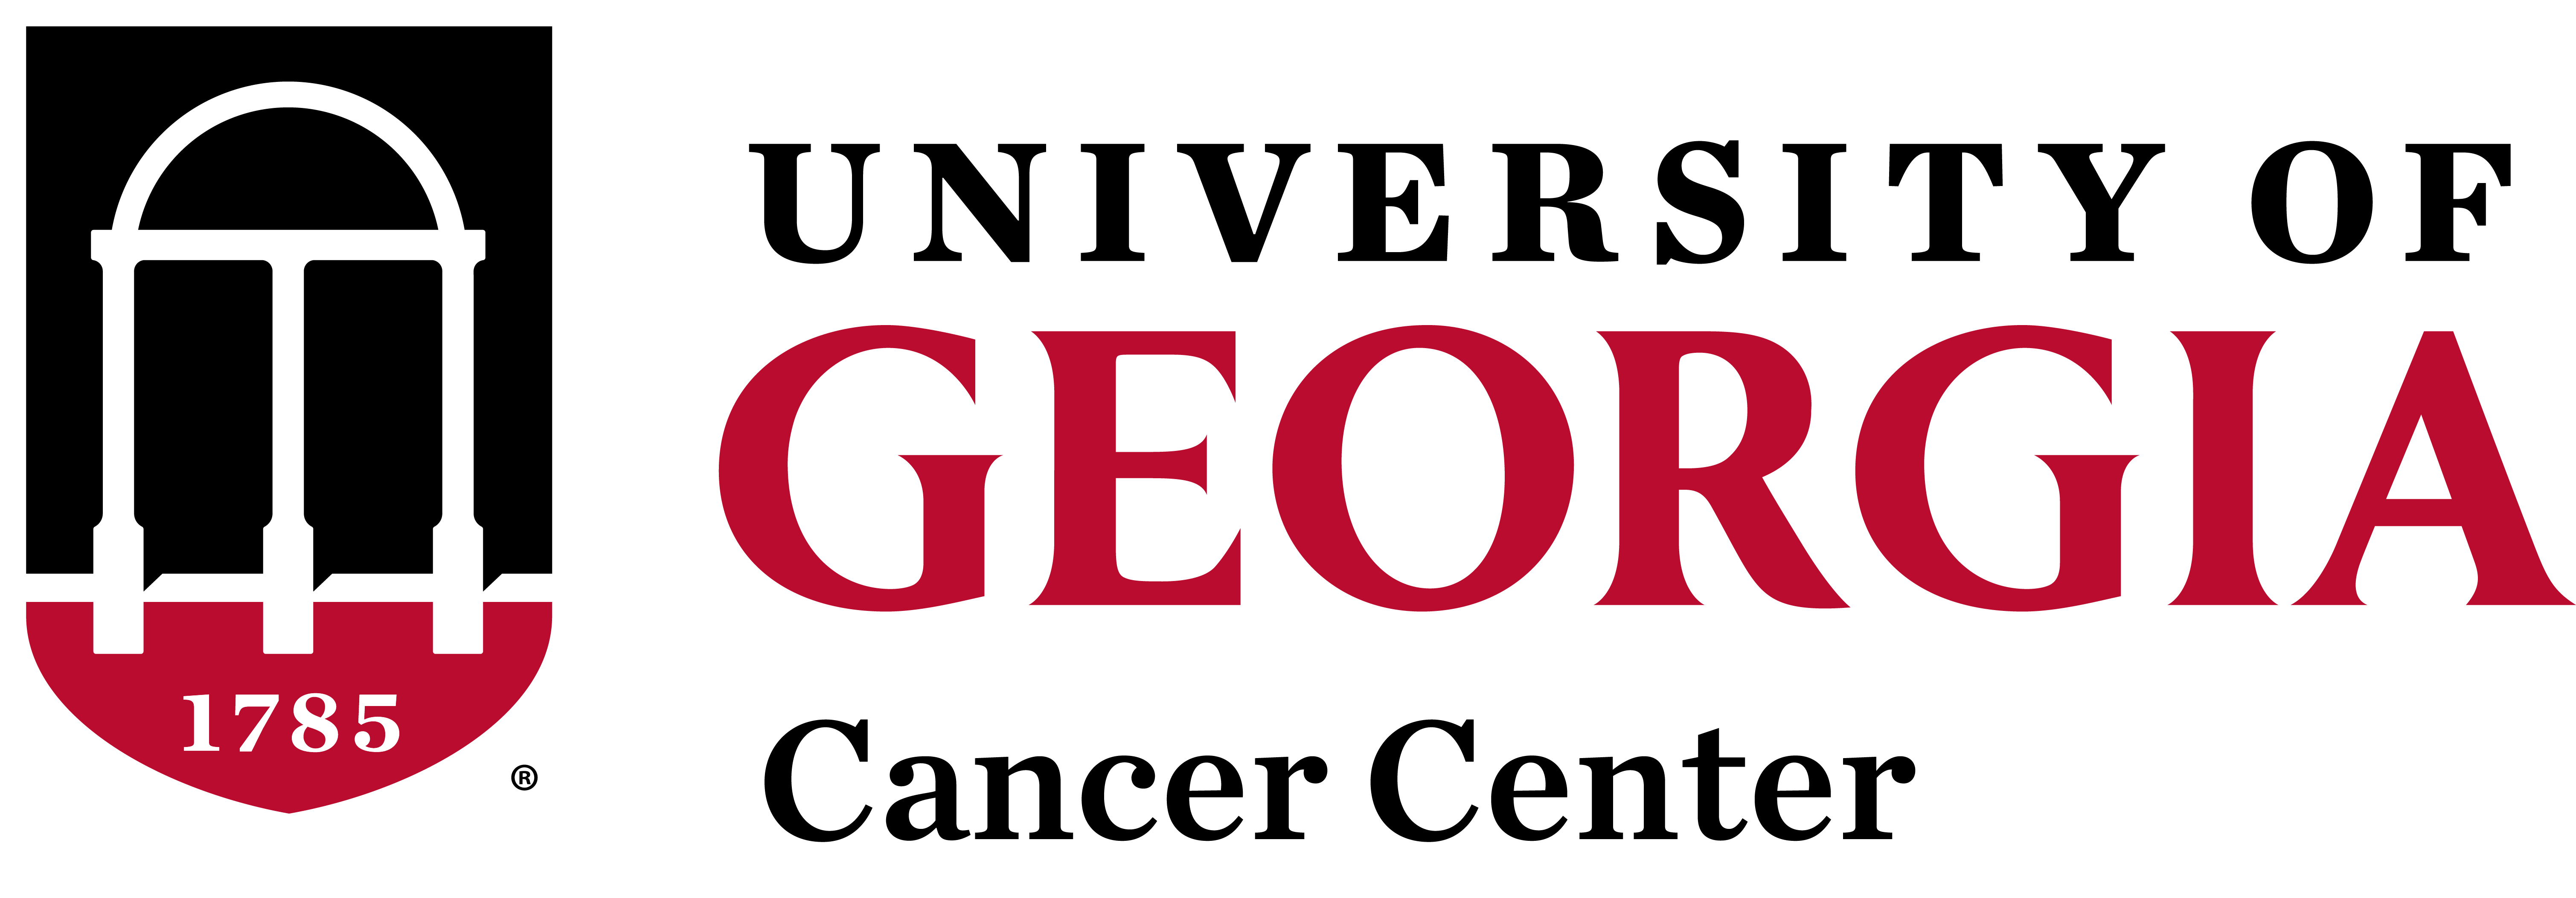 University of Georgia Cancer Center